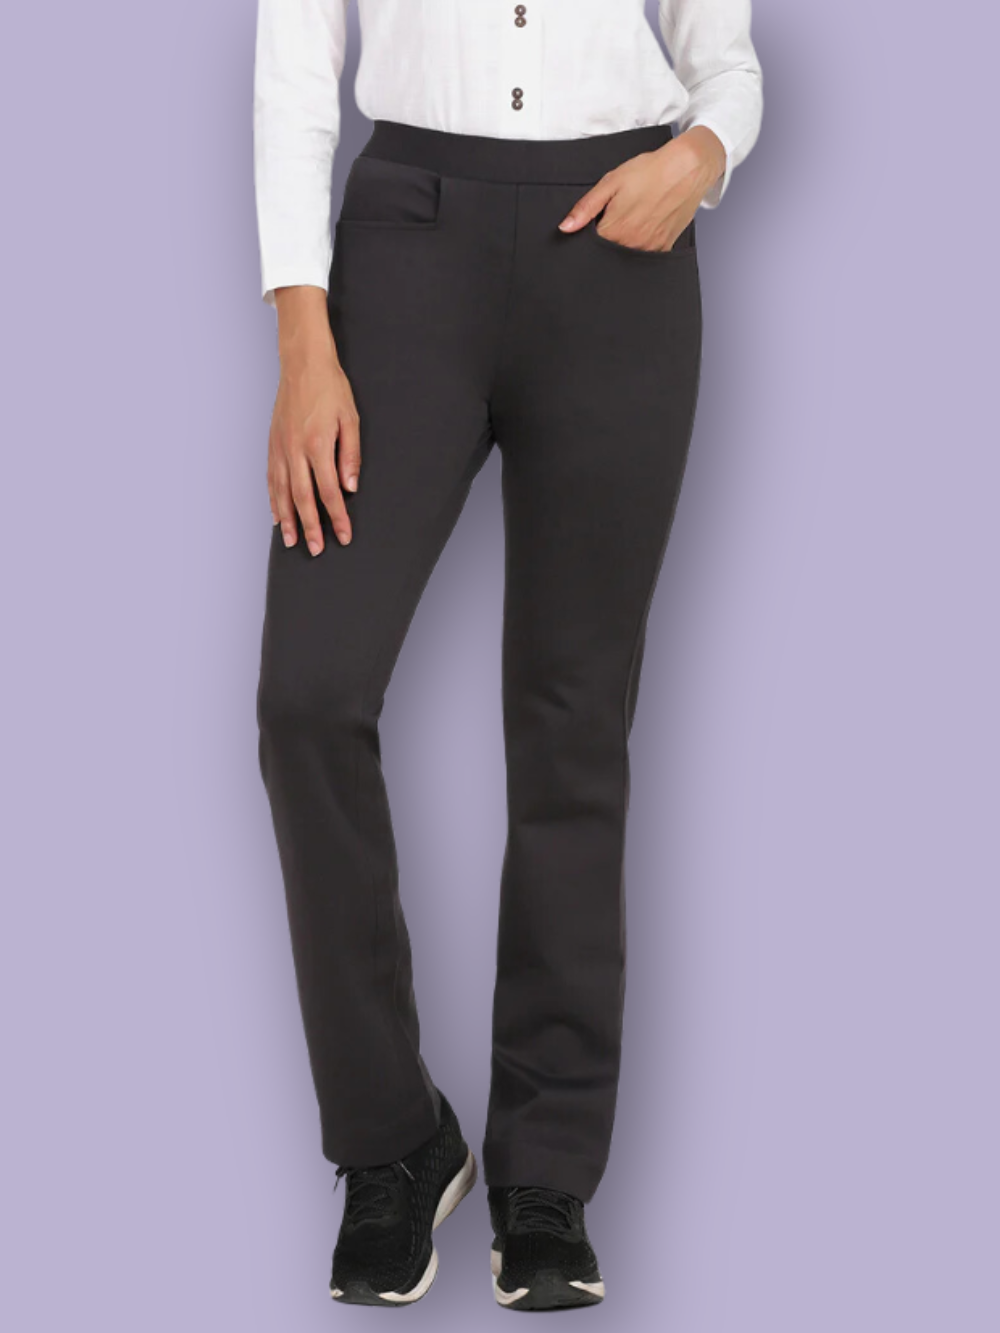 VAN HEUSEN Slim Fit Men Grey Trousers - Buy VAN HEUSEN Slim Fit Men Grey  Trousers Online at Best Prices in India | Flipkart.com